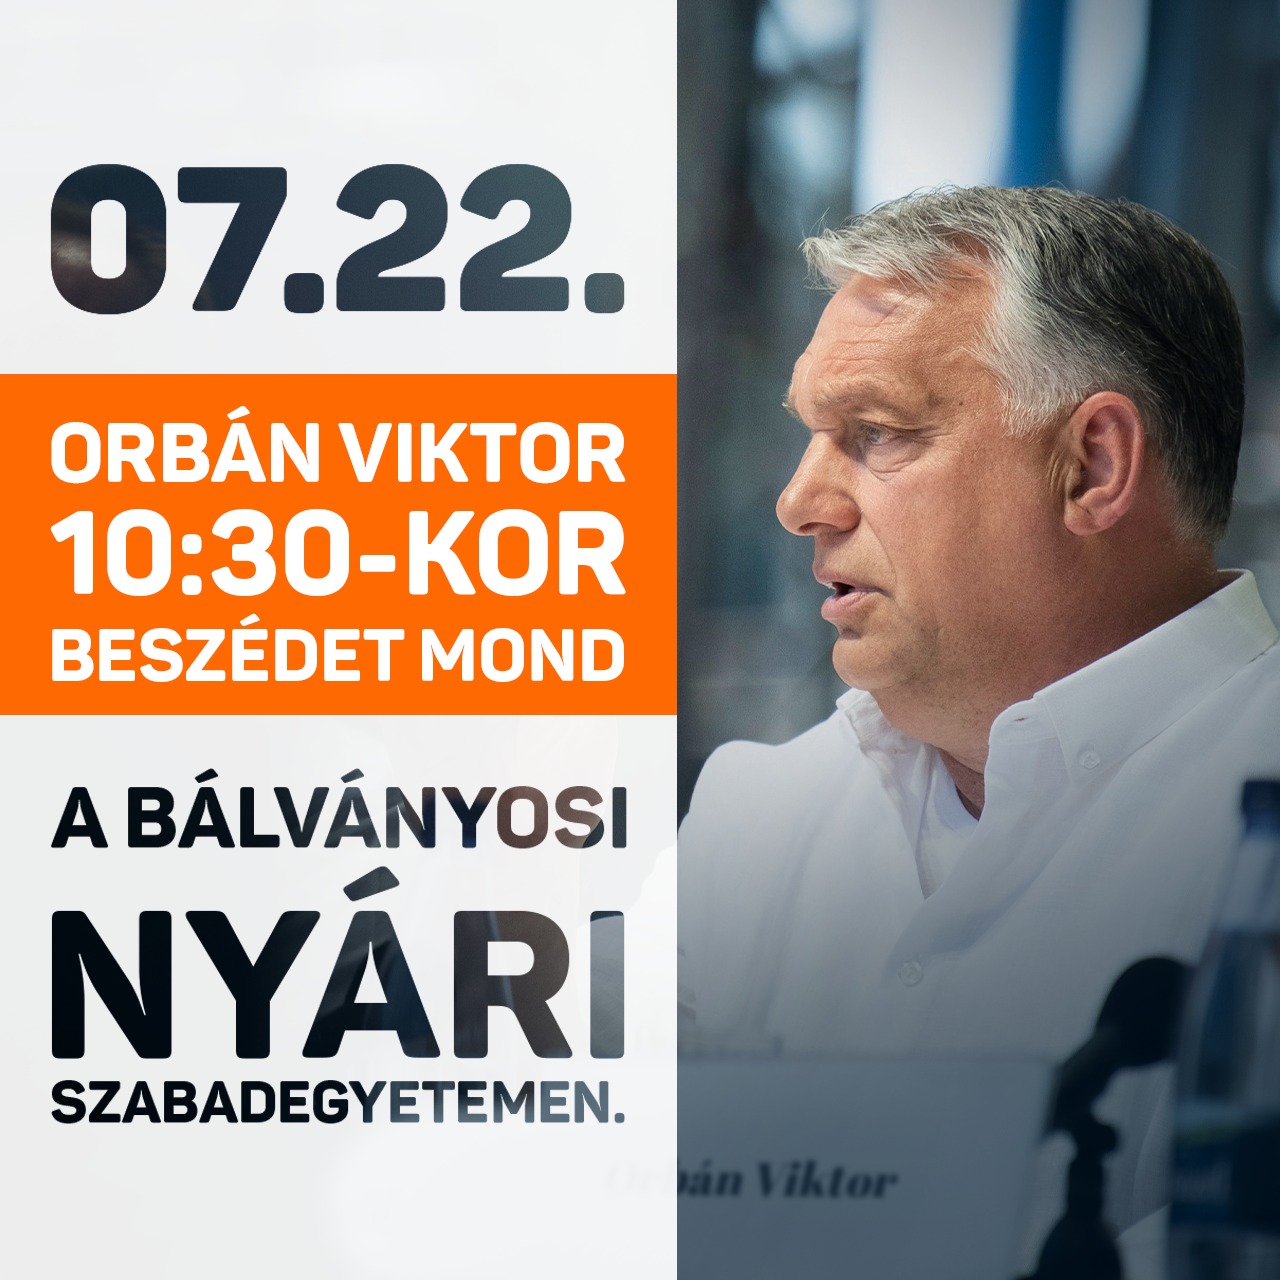 Orbán Viktor szombat (július 22.) délelőtt tartja meg beszédét a 32. Bálványosi Nyári Szabadegyetem és Diáktábor rendezvényén.